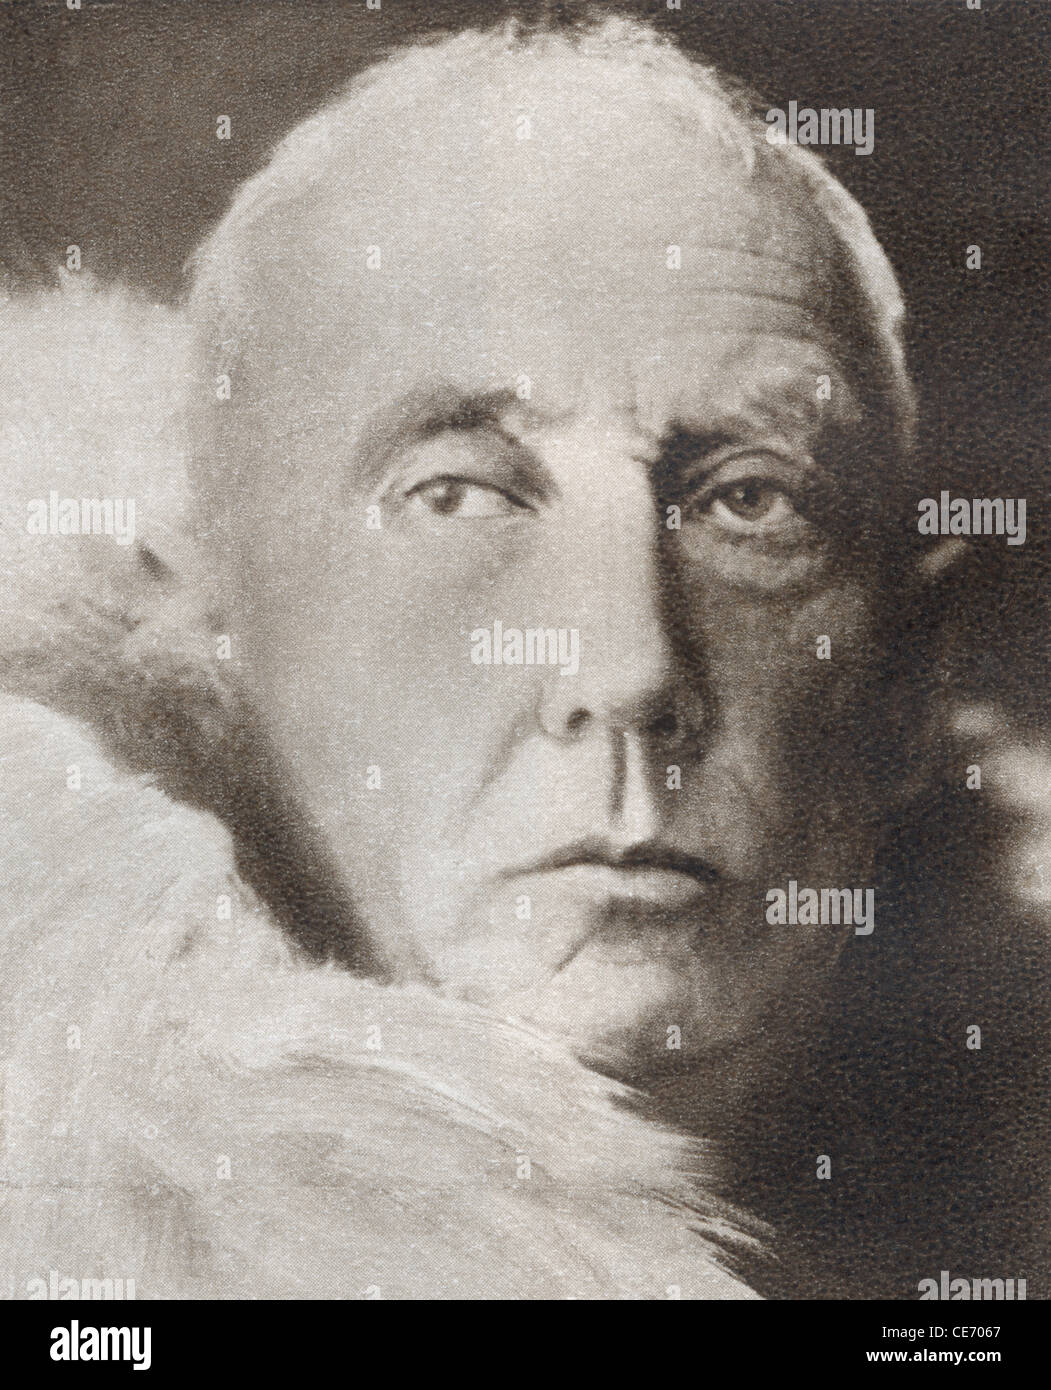 Roald Engelbregt Gravning Amundsen, 1872-1928. Norwegischer Polarforscher und Führer der ersten Expedition zum Südpol. Stockfoto